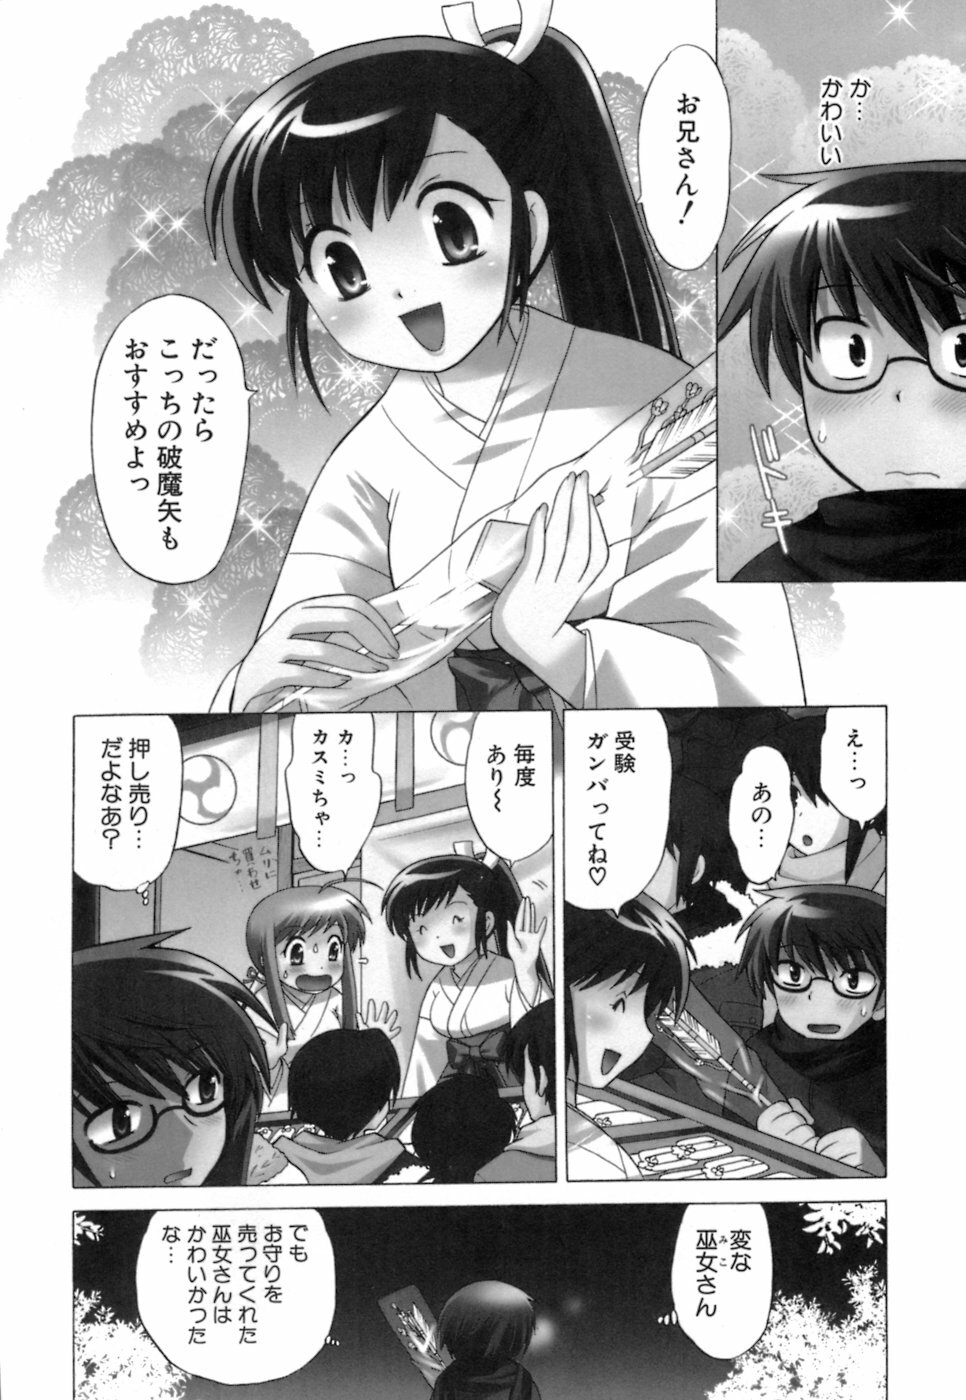 [Kotono Wakako] Miko Moe 1 page 9 full